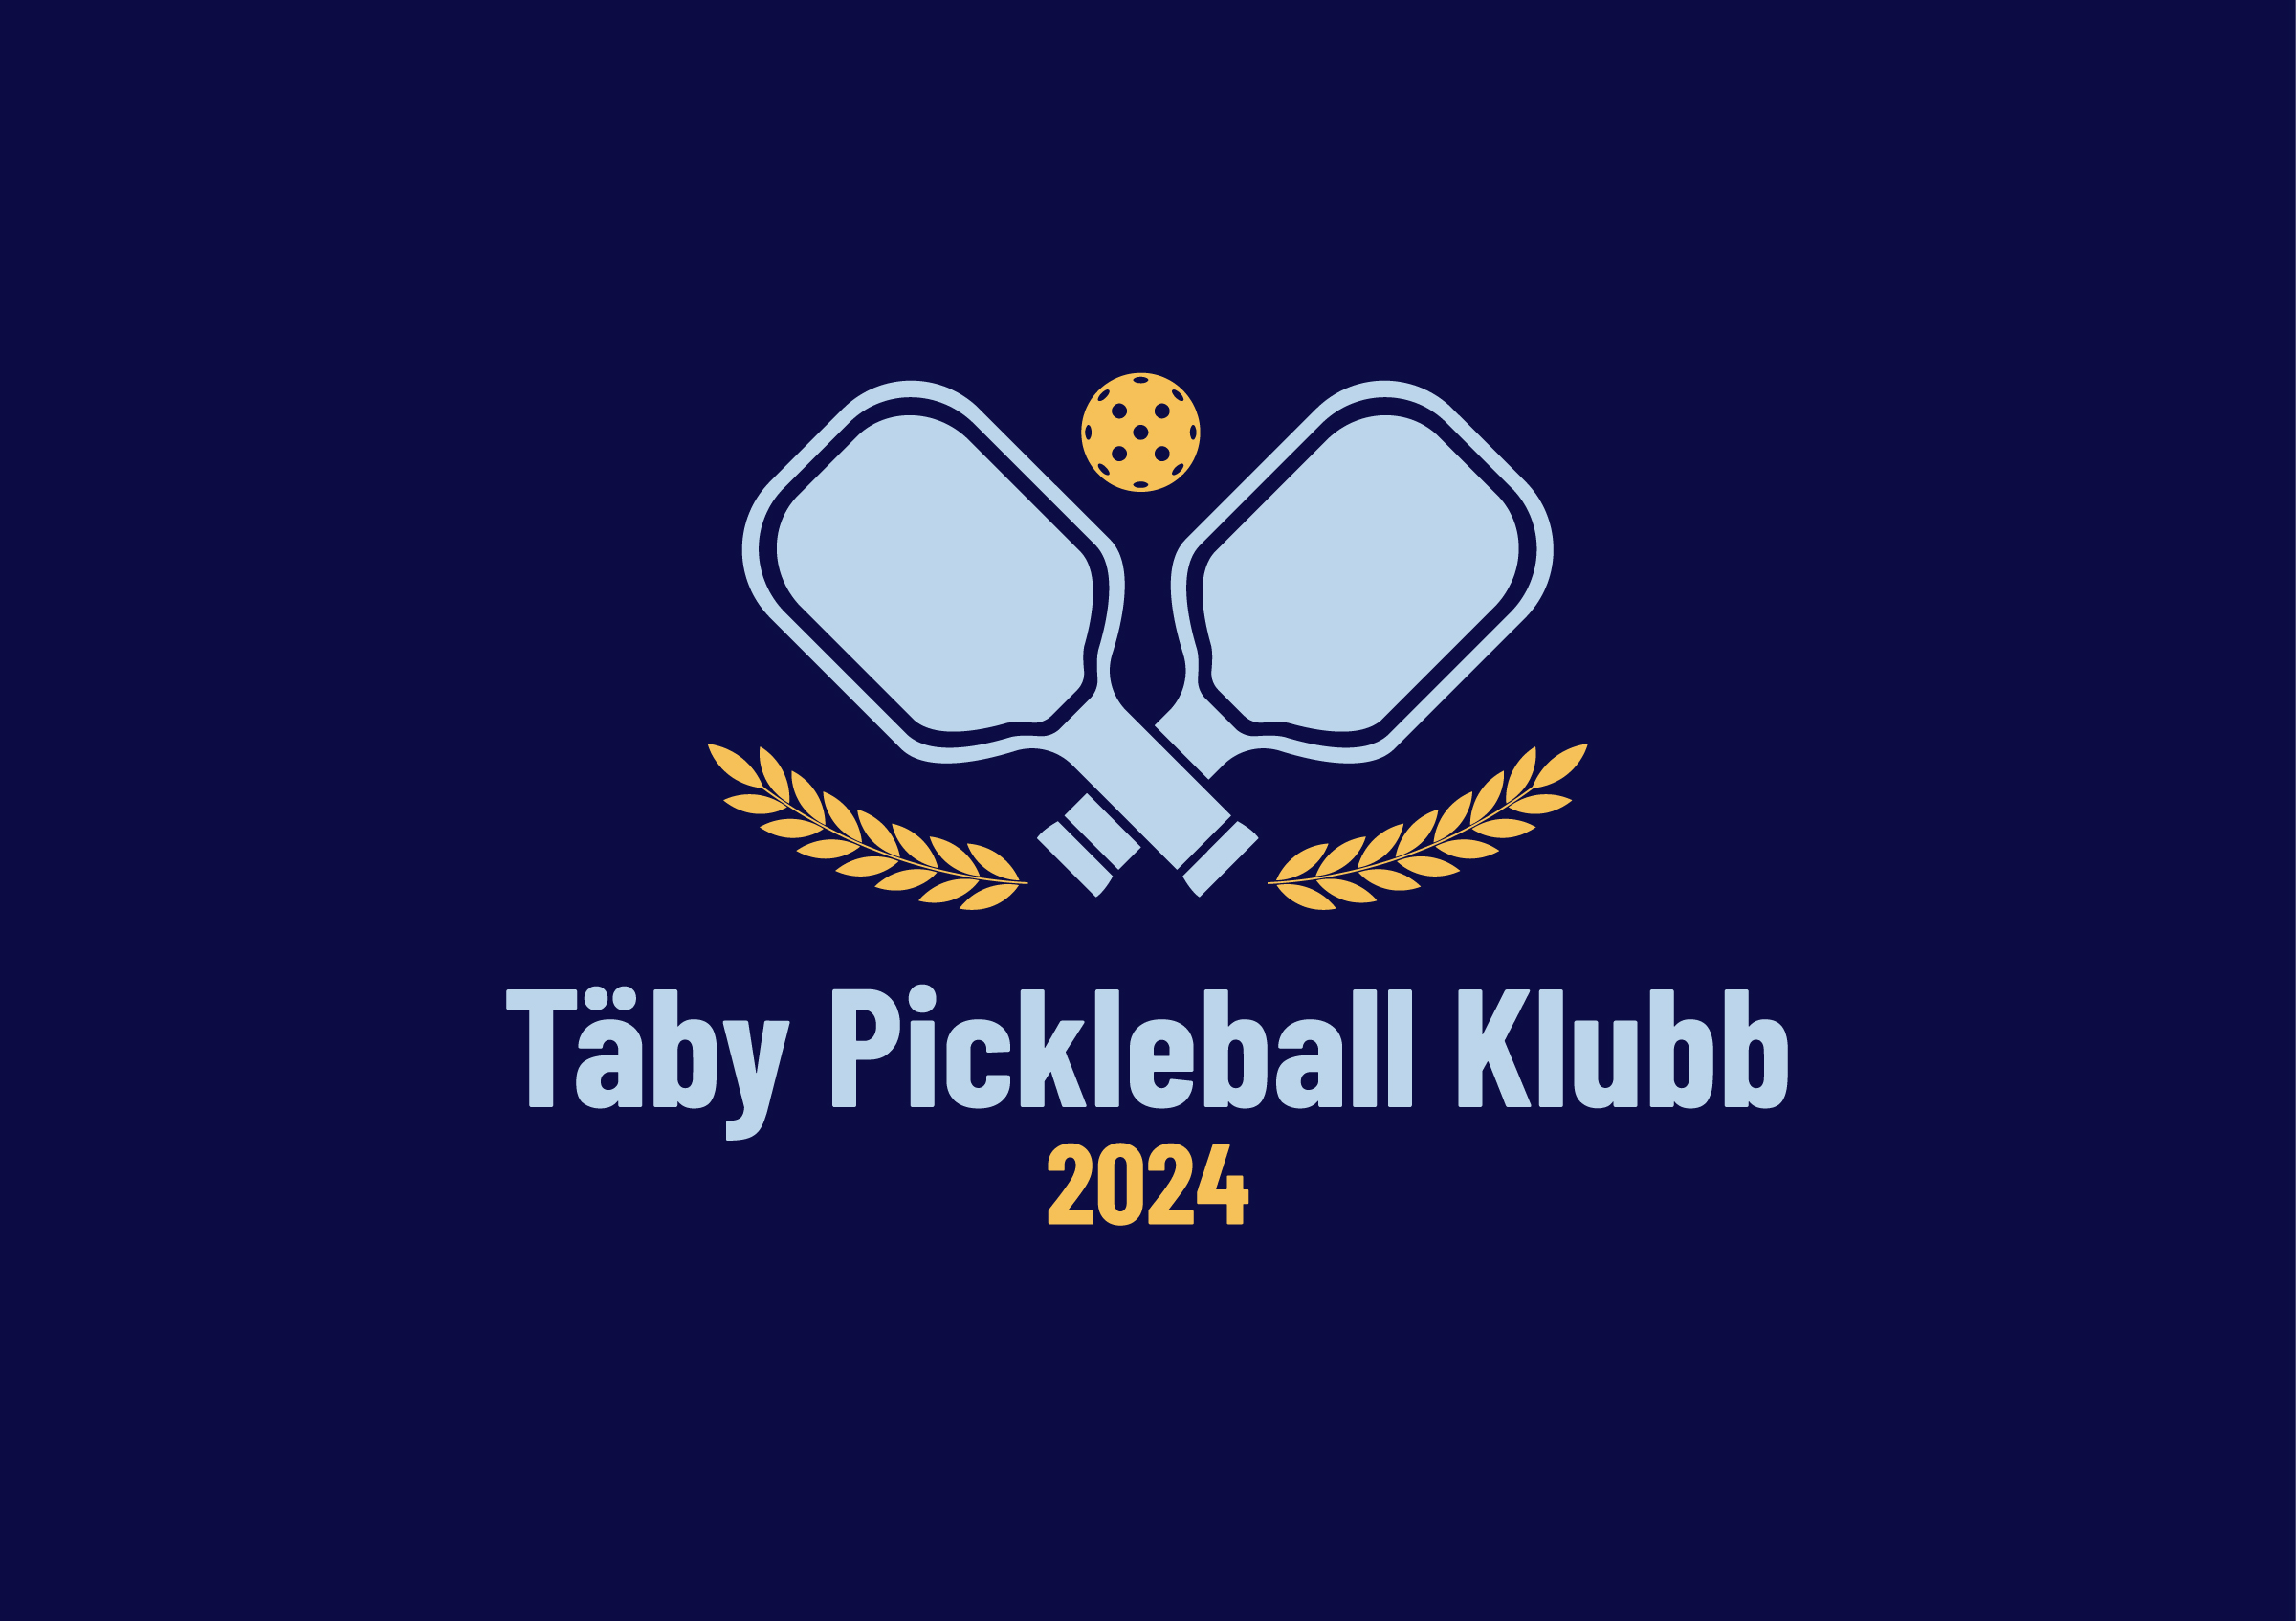 Täby Pickleball Klubb Pickleballracketar och en boll. Grundat 2024.